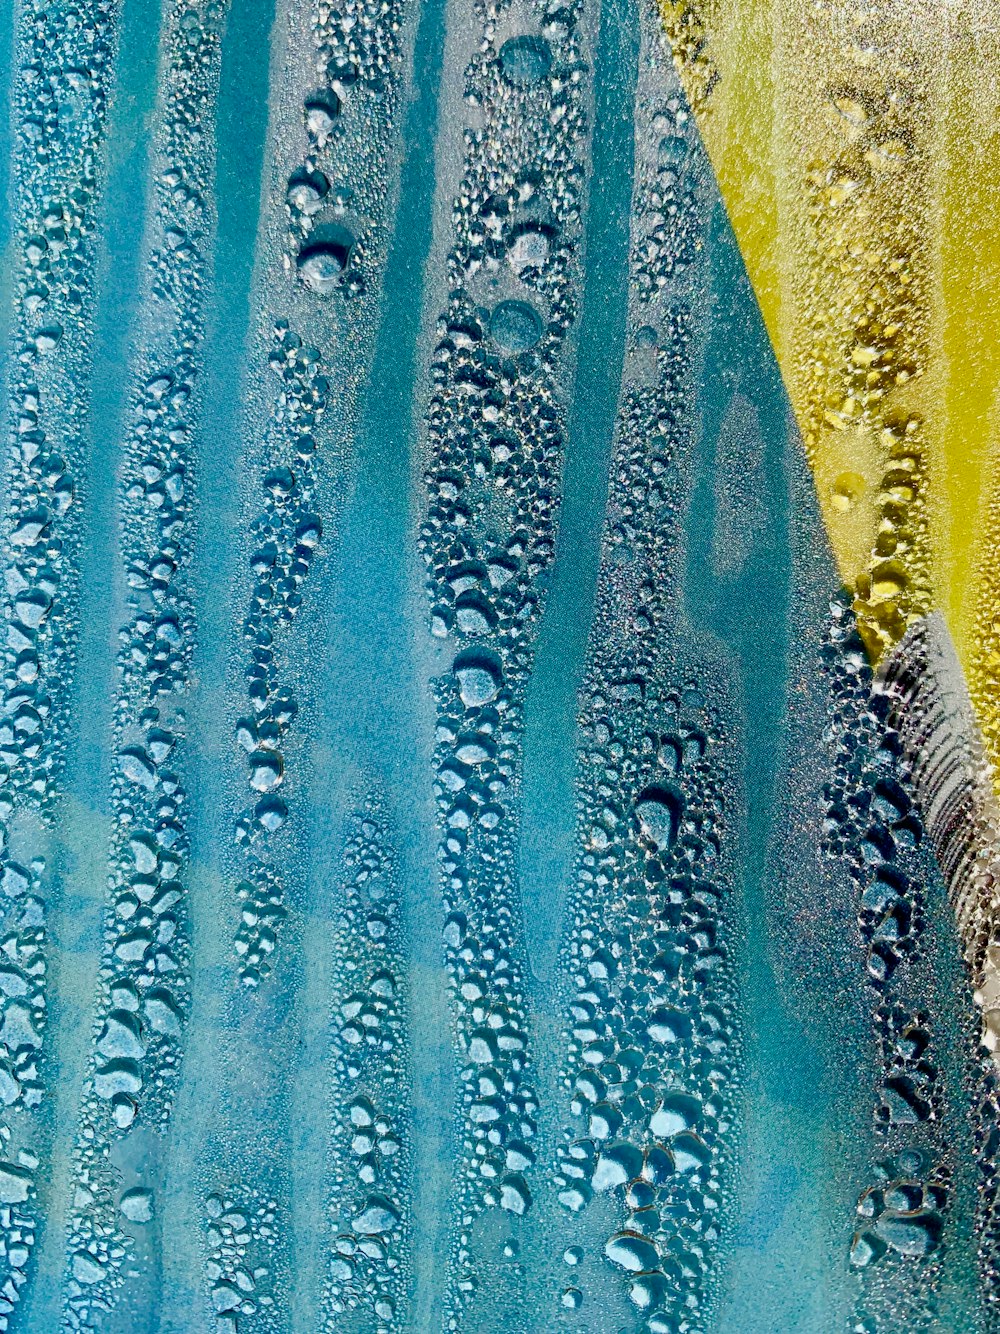 un dipinto blu e giallo con gocce d'acqua su di esso